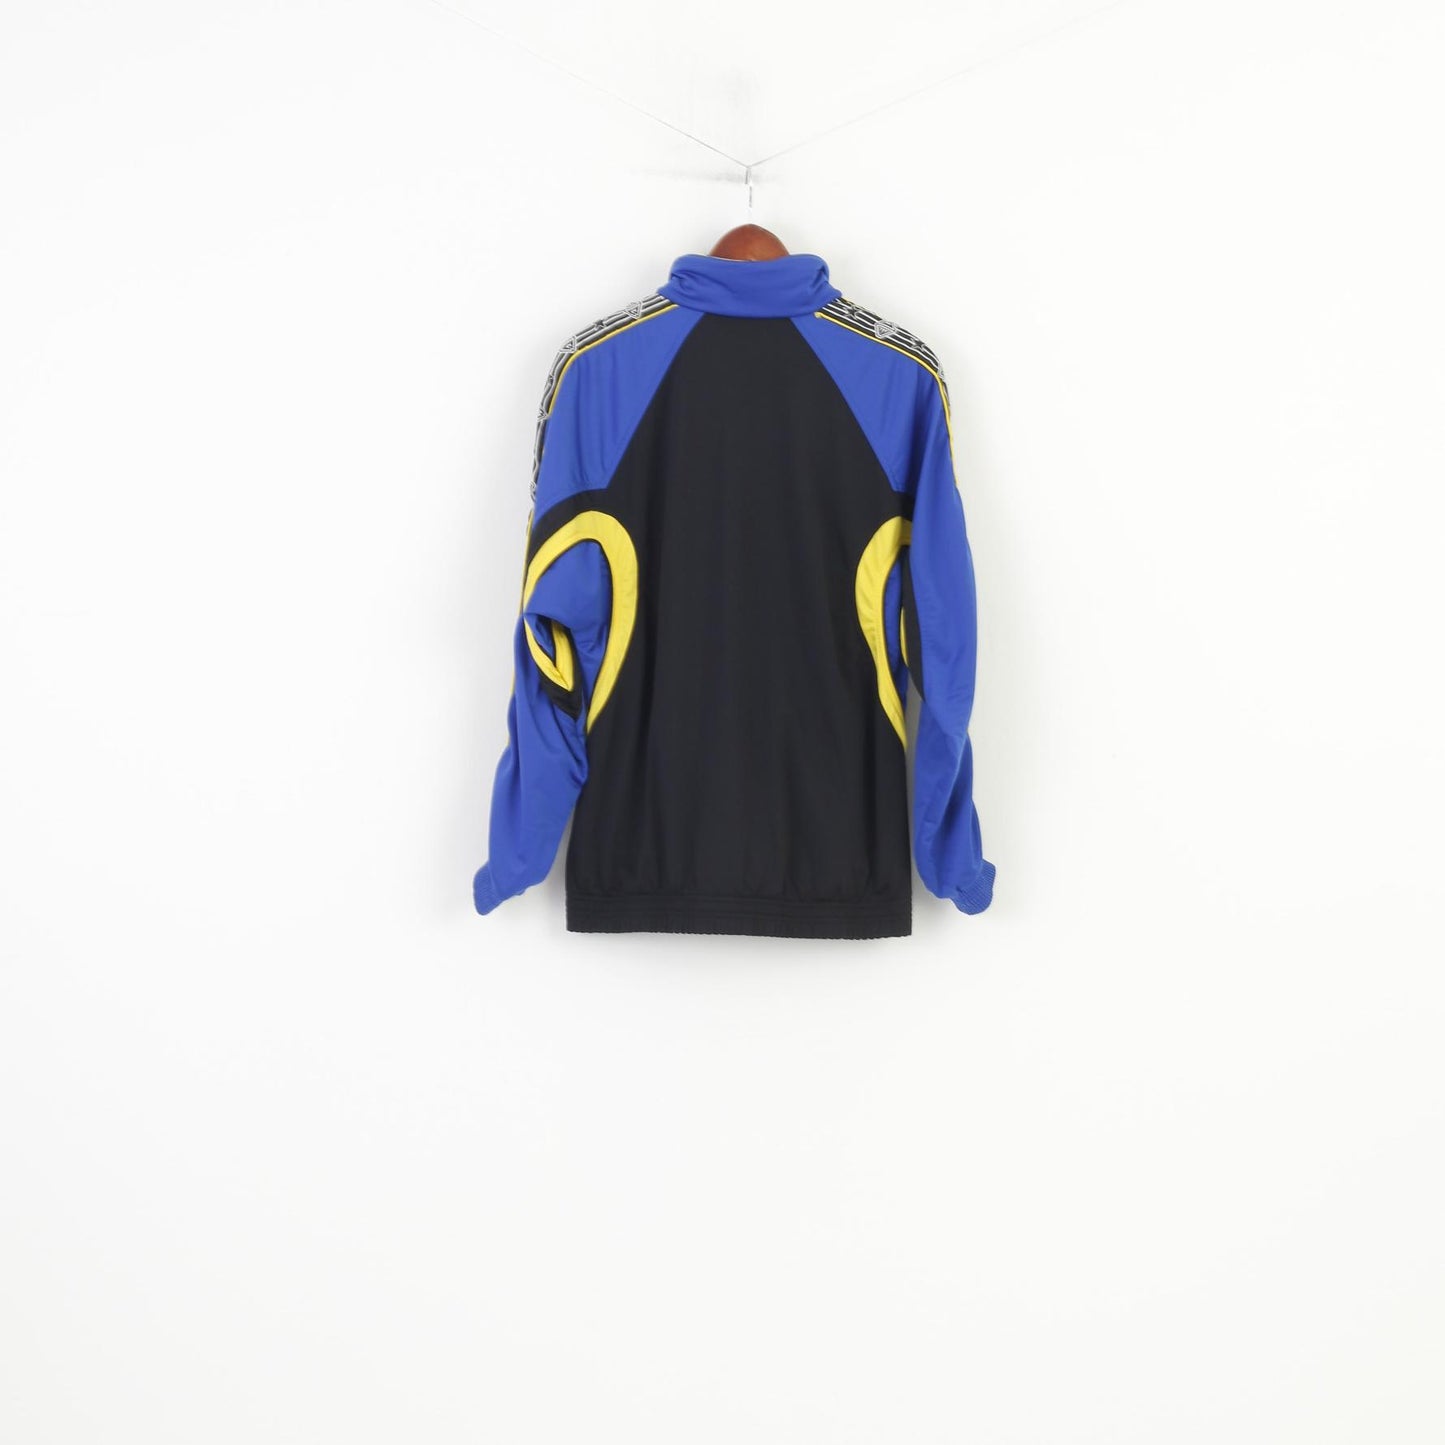 Beltona Hommes 7 XL Sweat Noir Bleu Fermeture Éclair Complète Sportswear Piste Vintage Top